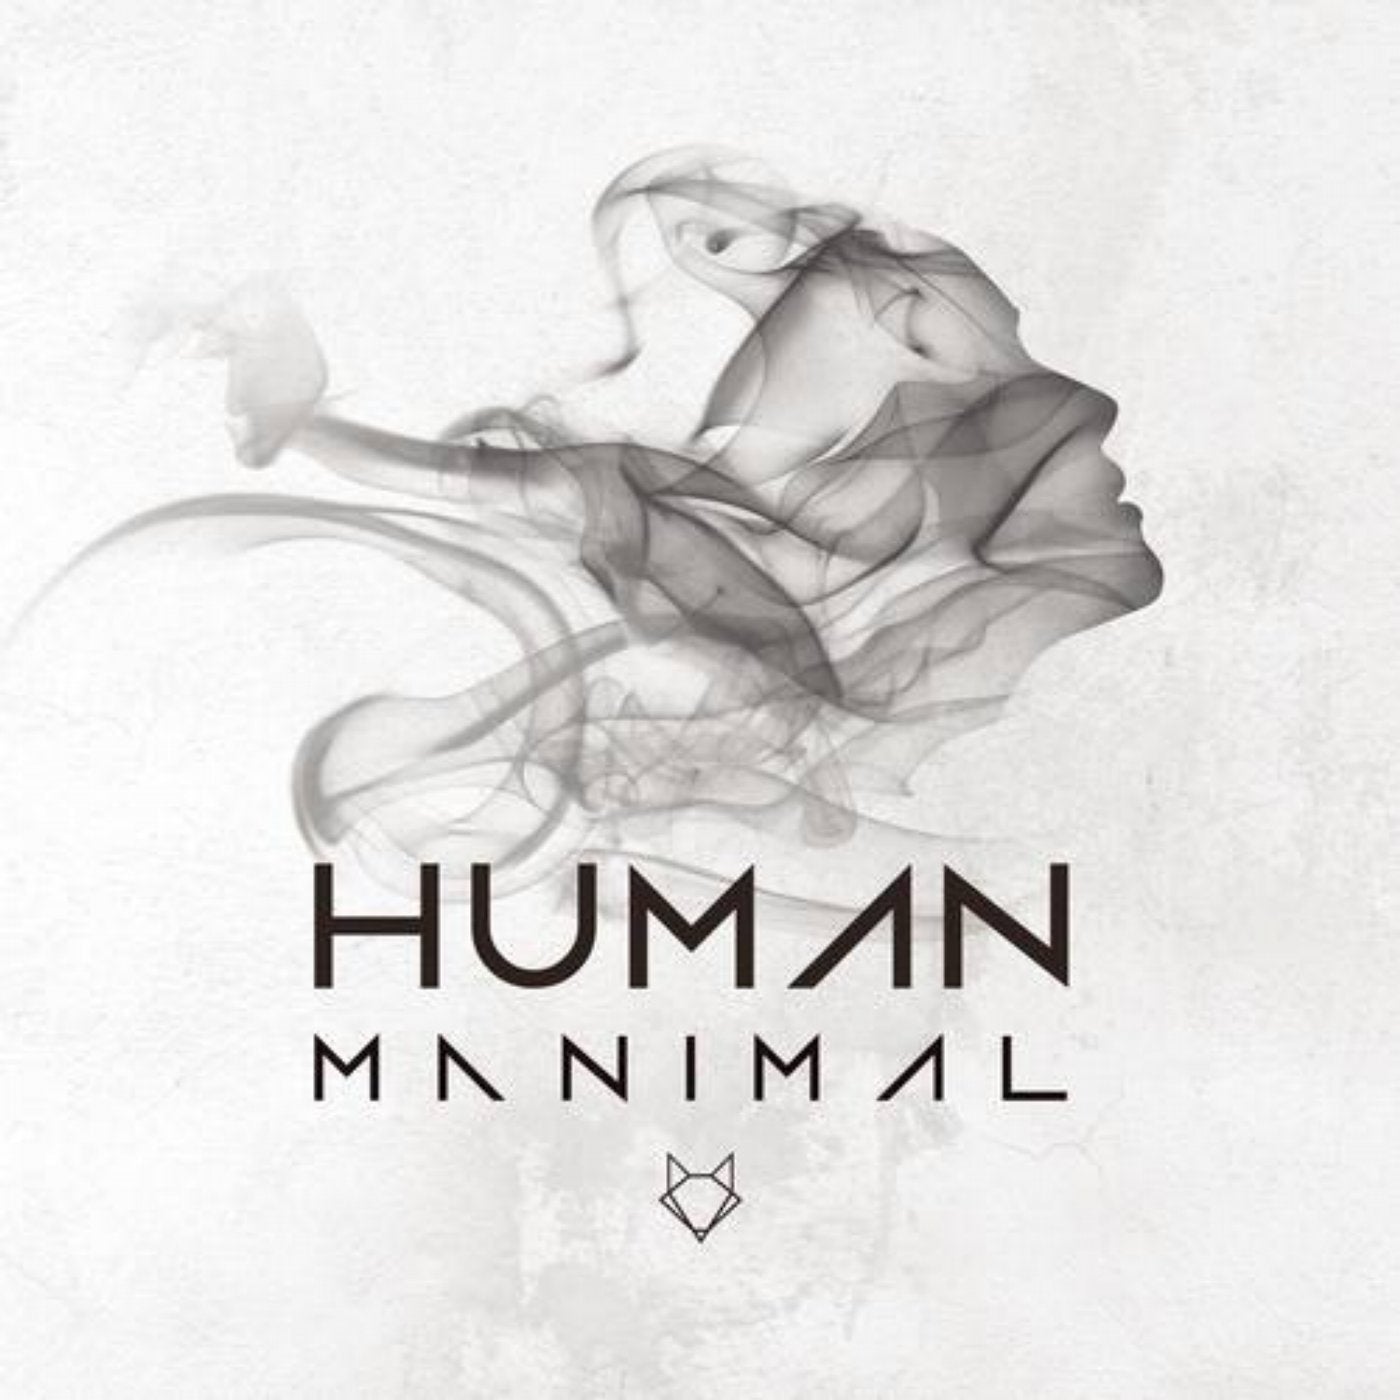 Human (Remixes)